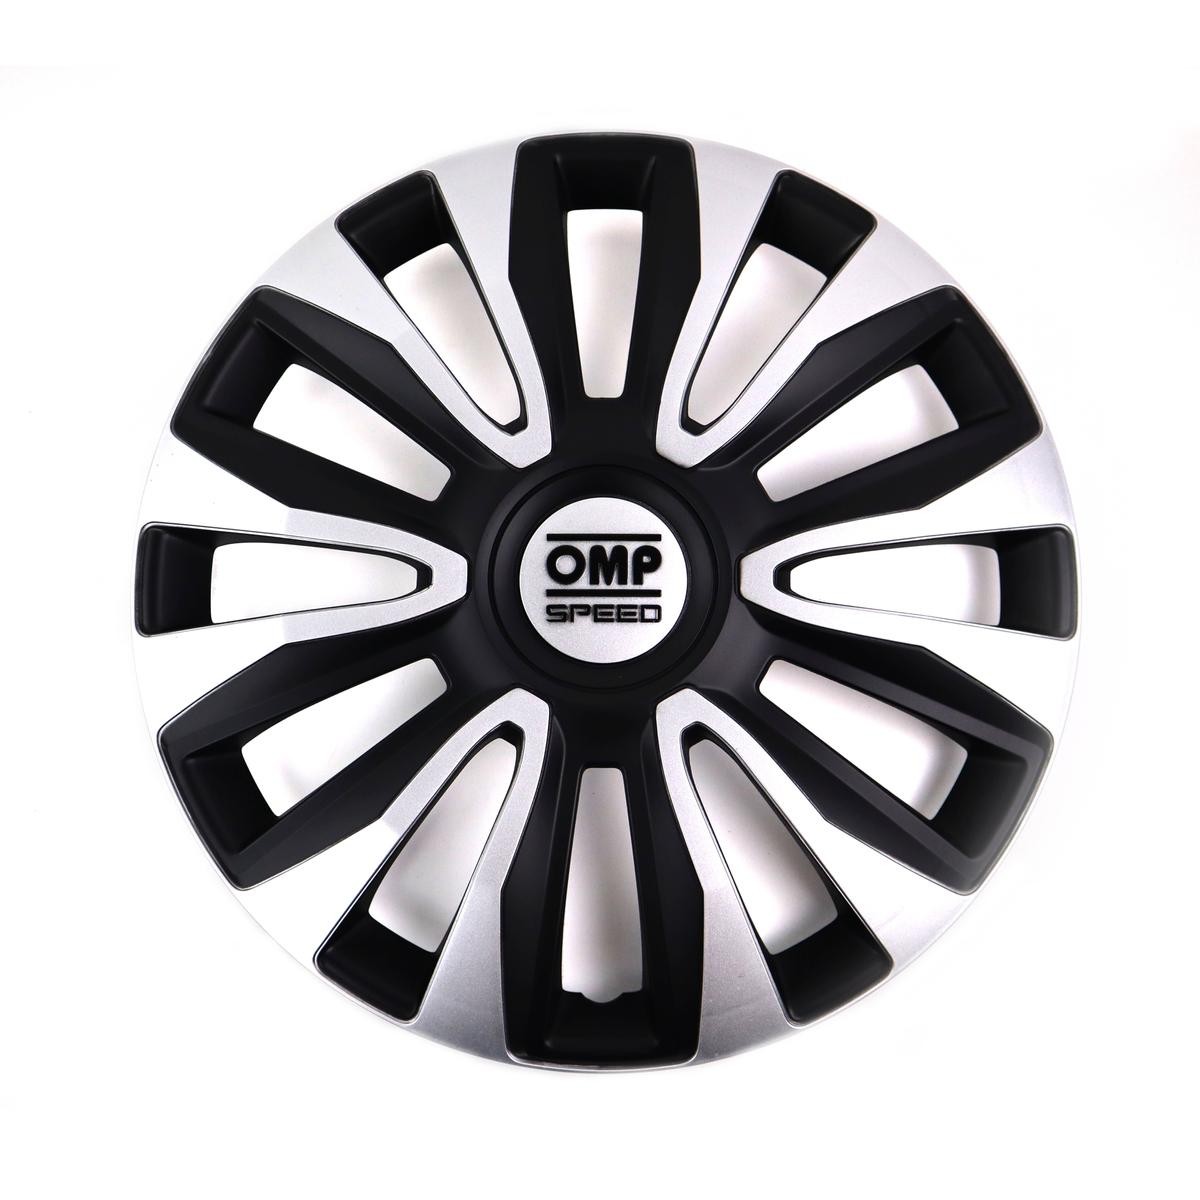 OMP OMPS07011412 Car wheel trims VW Golf 7 (5G1, BQ1, BE1, BE2) 14 Inch black, silver